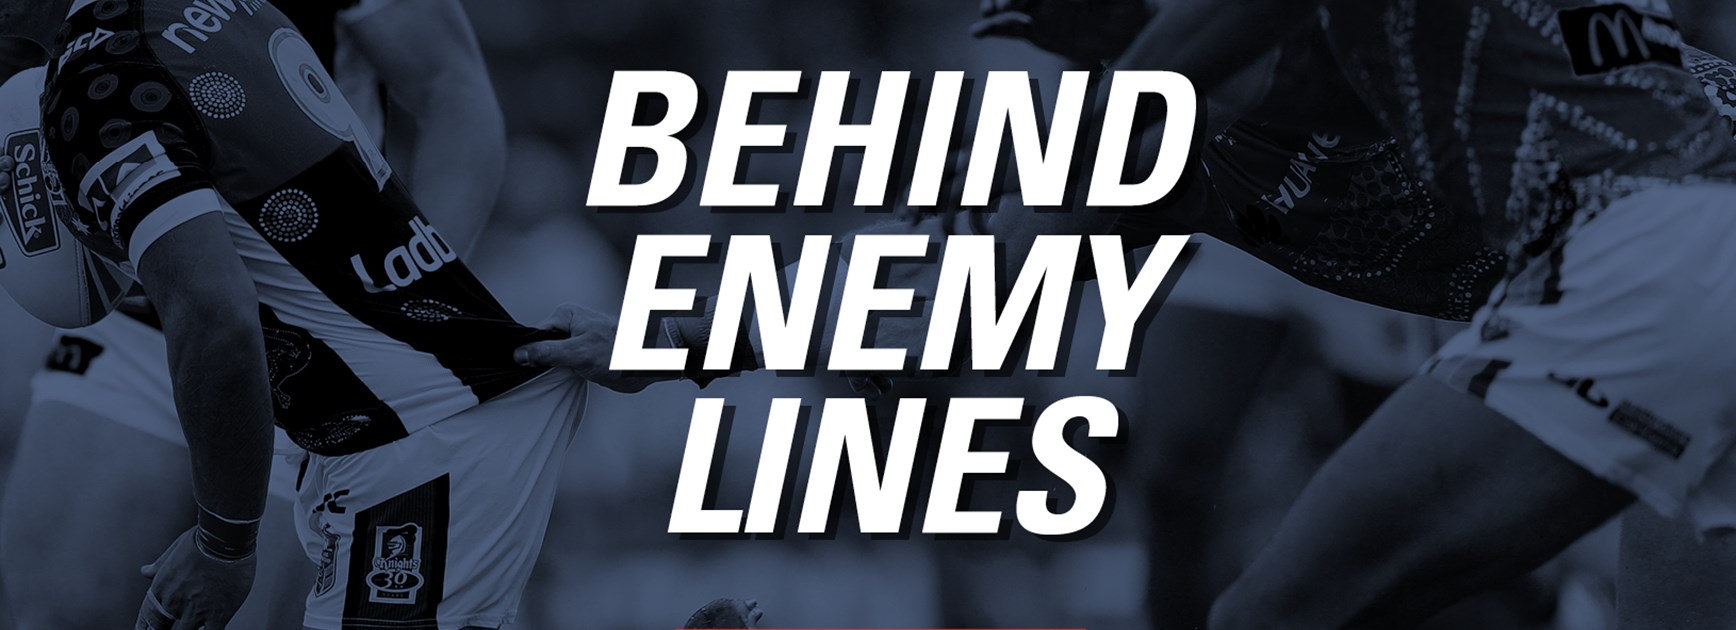 Behind enemy lines - Round 1